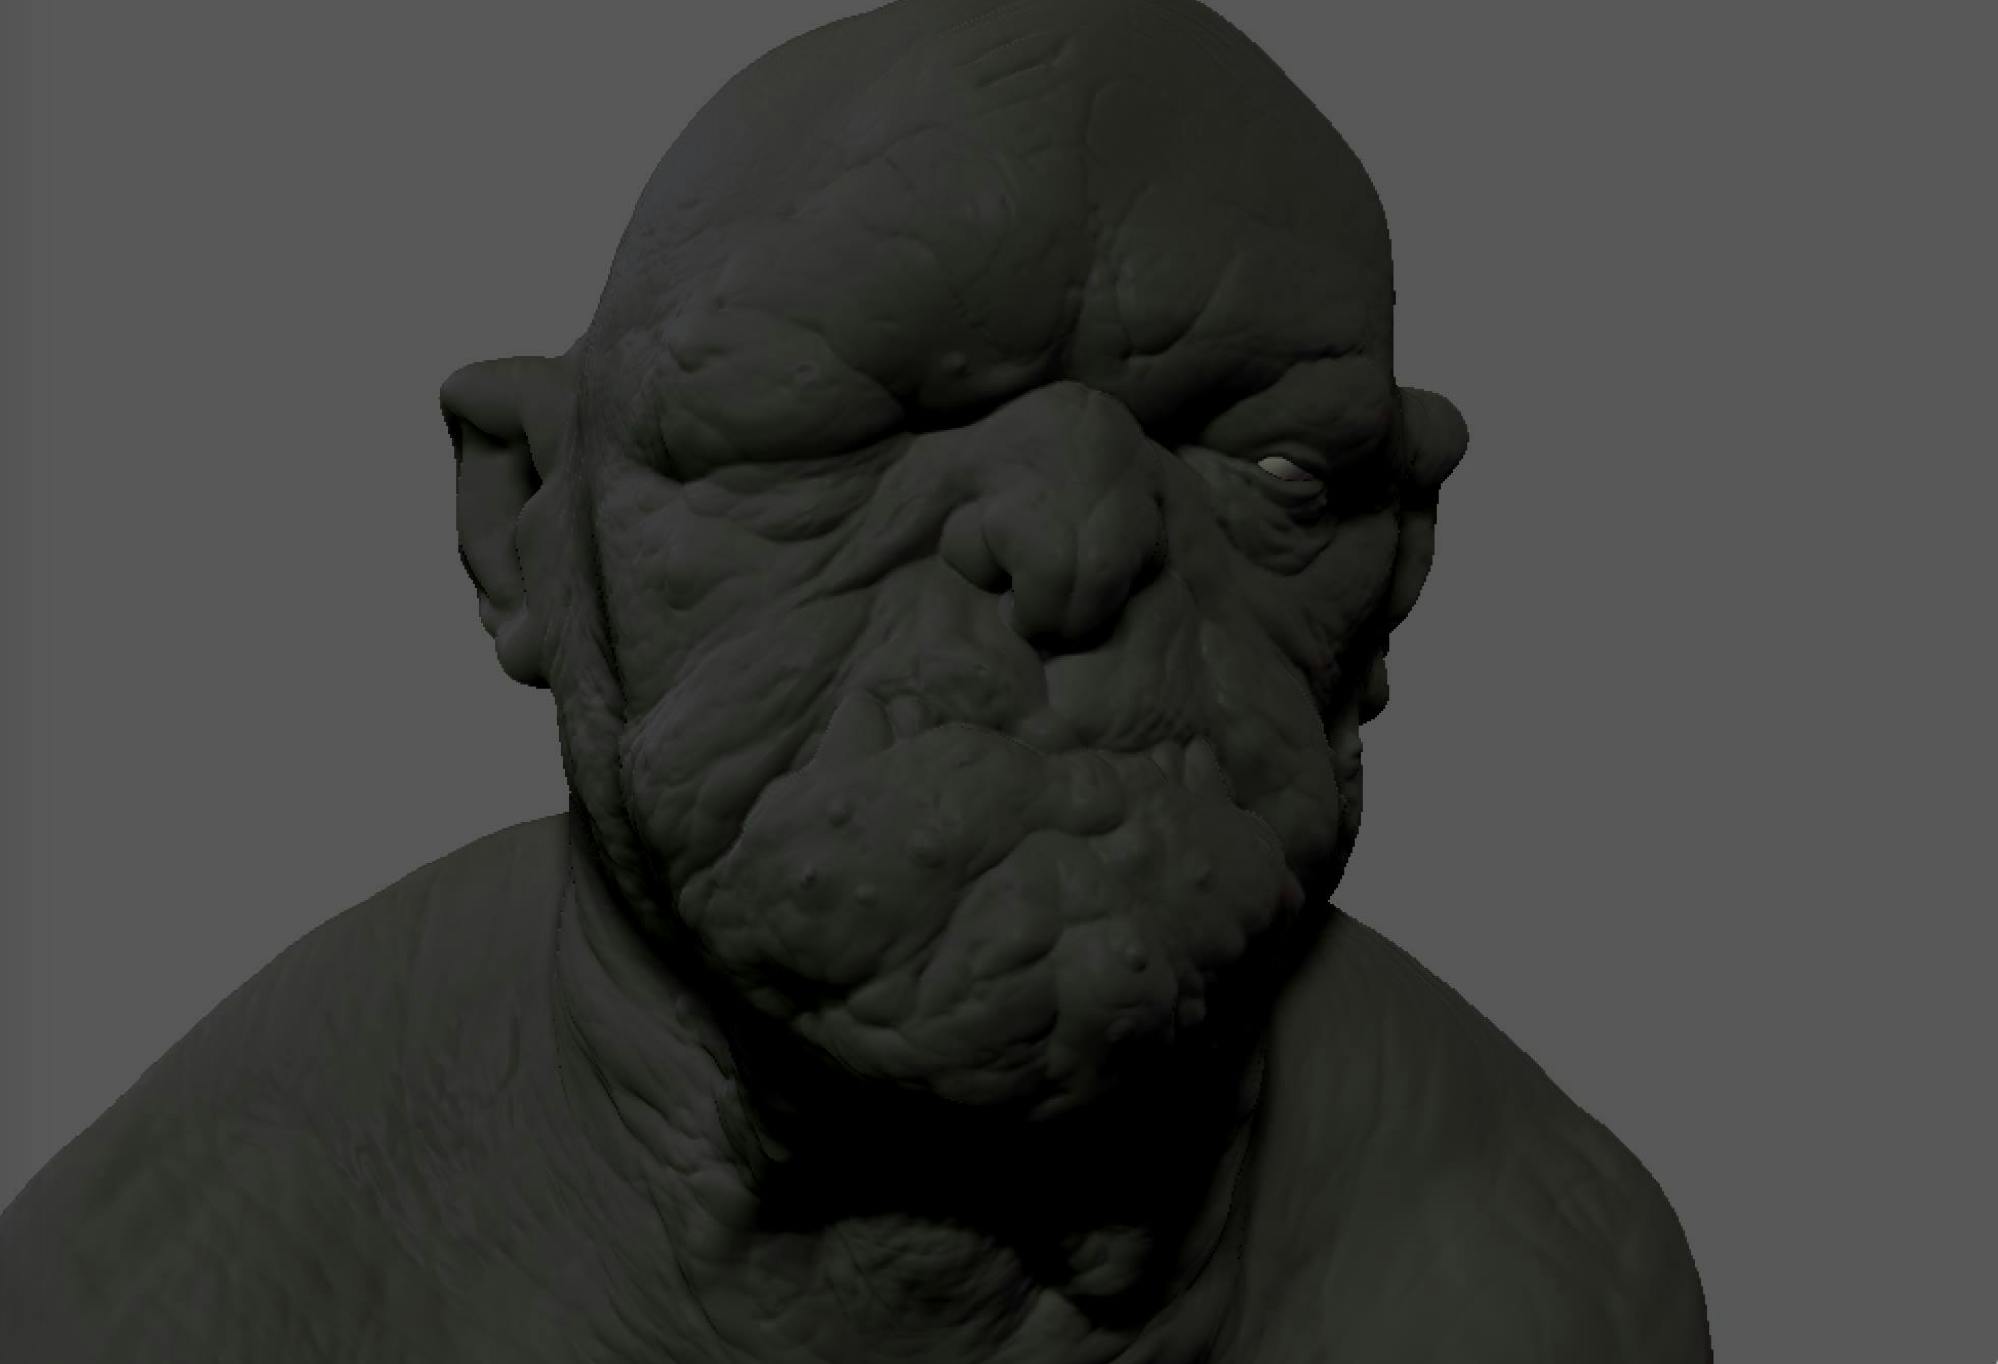 3D model of a grotesque face